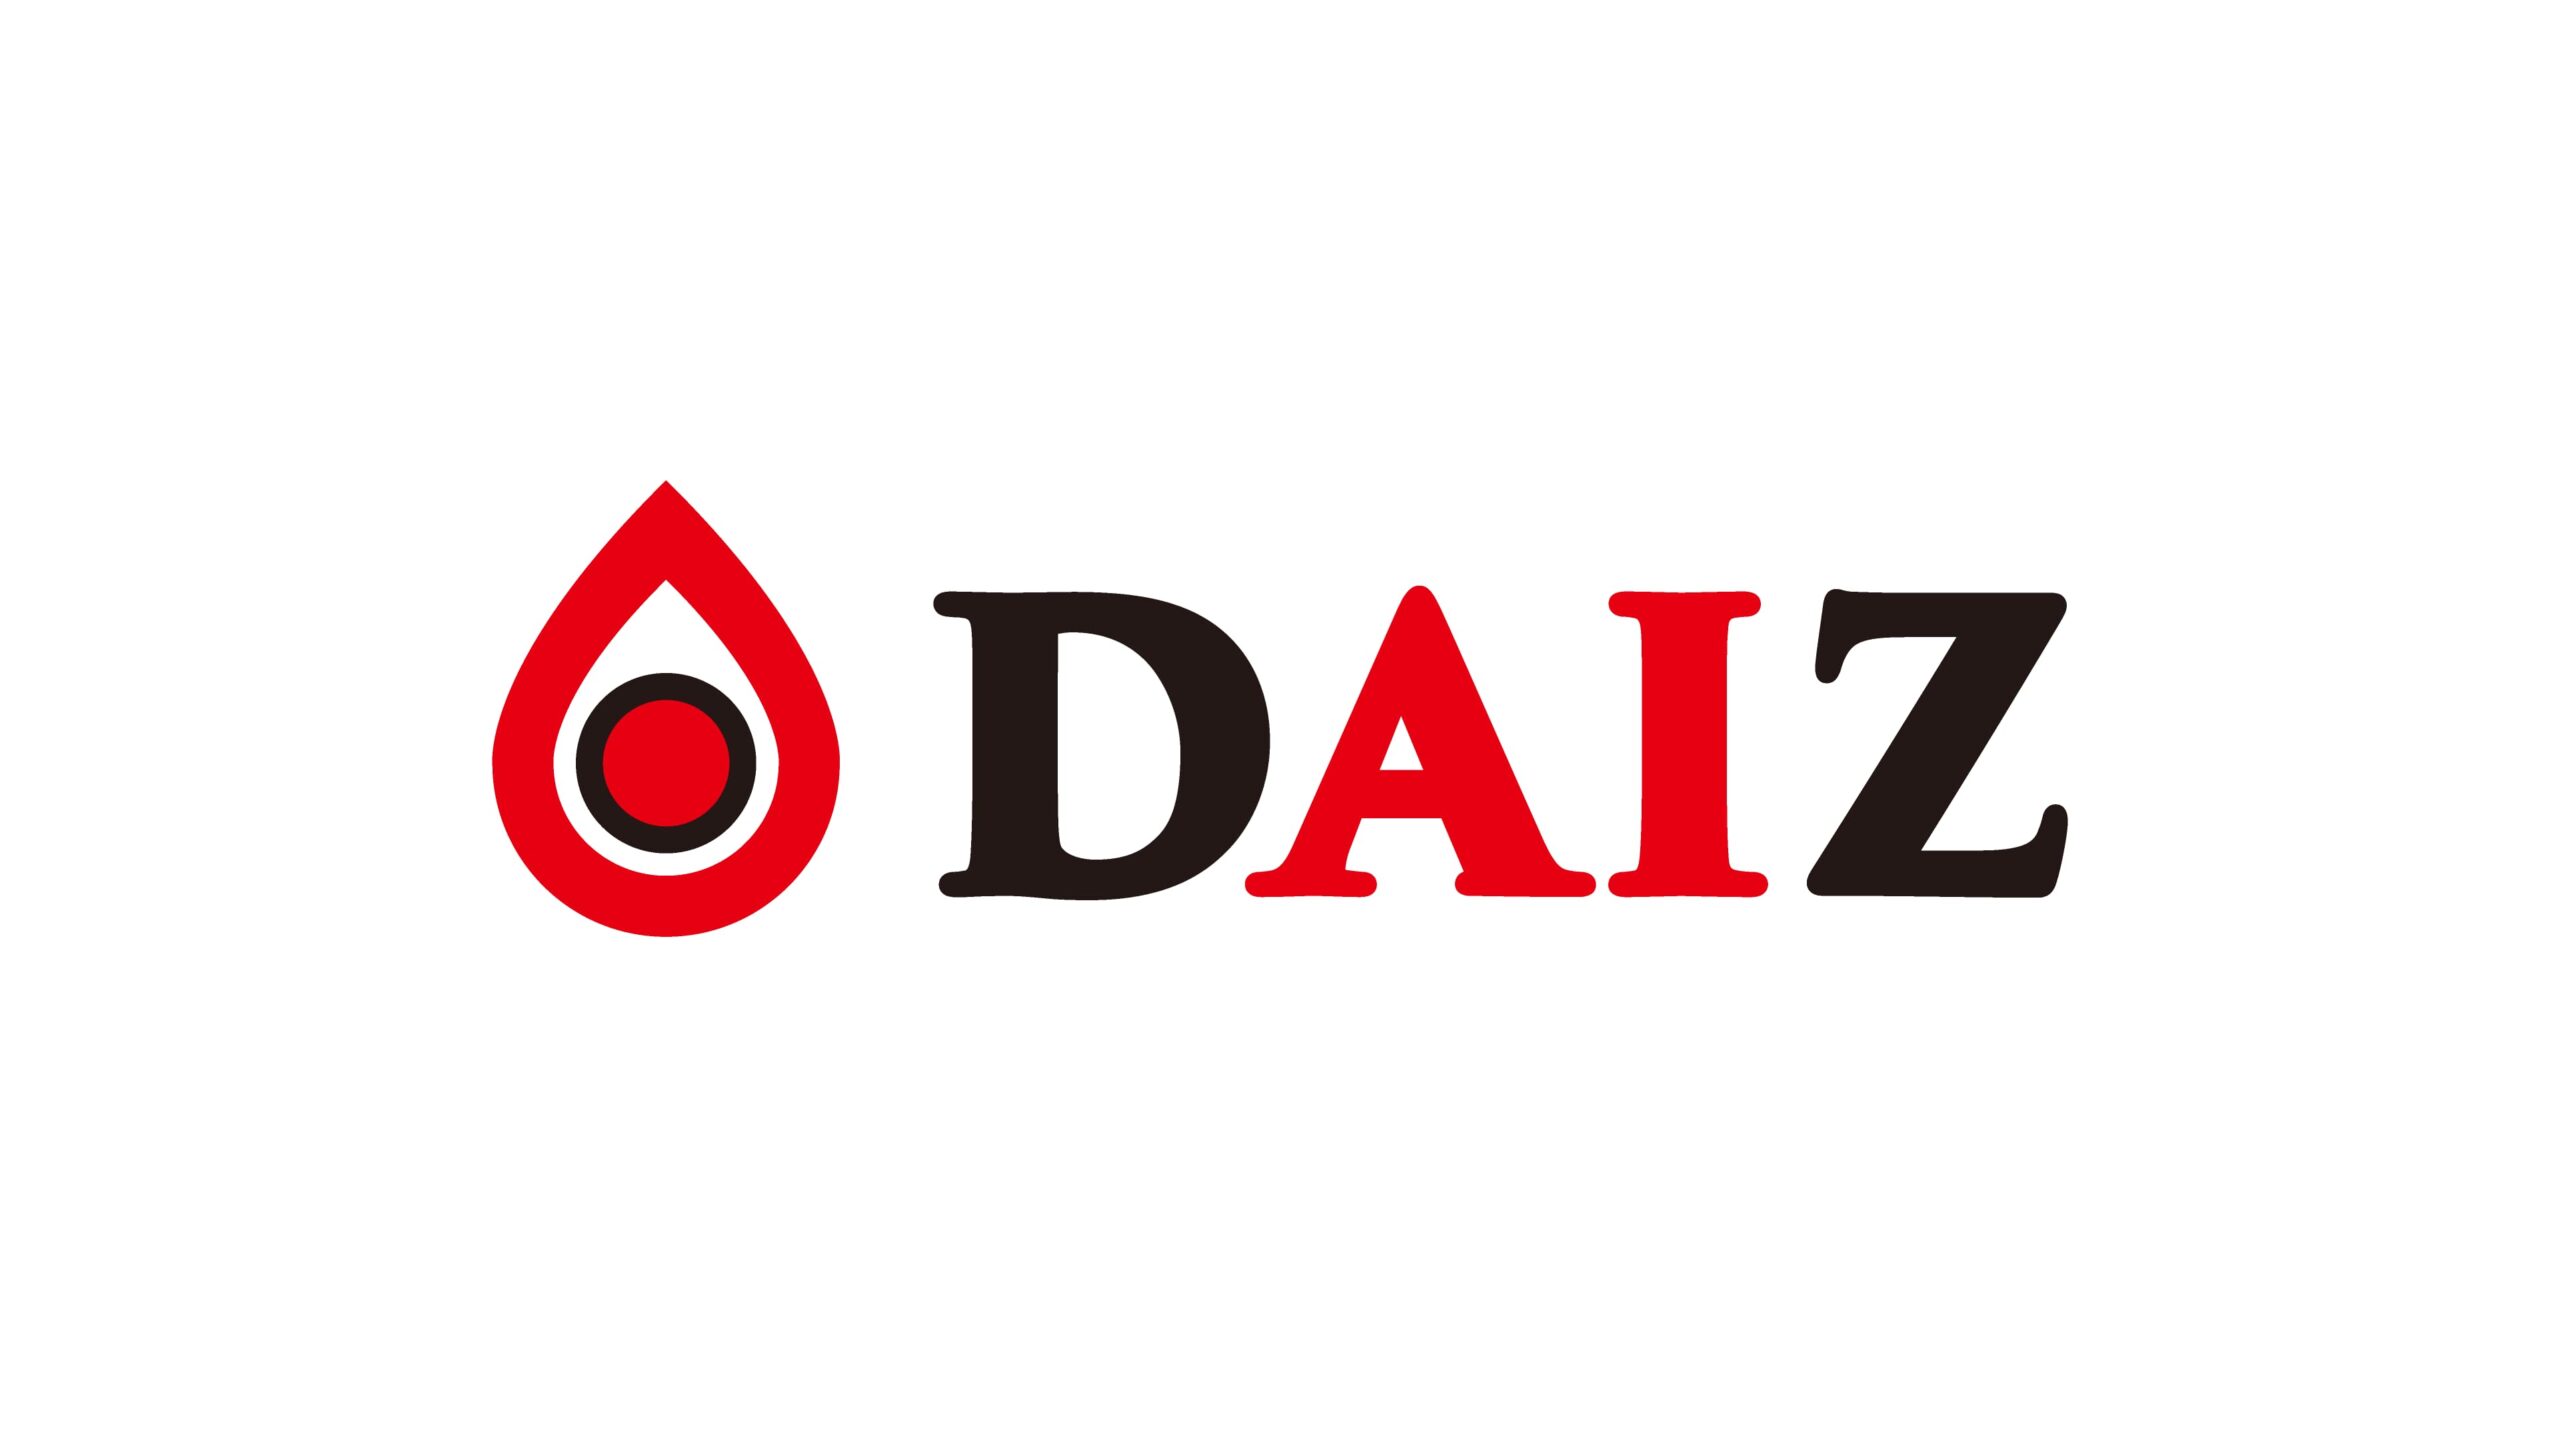 「ミラクルミート」を開発・製造するフードテックのDAIZ株式会社がデット含め71億円の資金調達ー累計調達額は131億円に